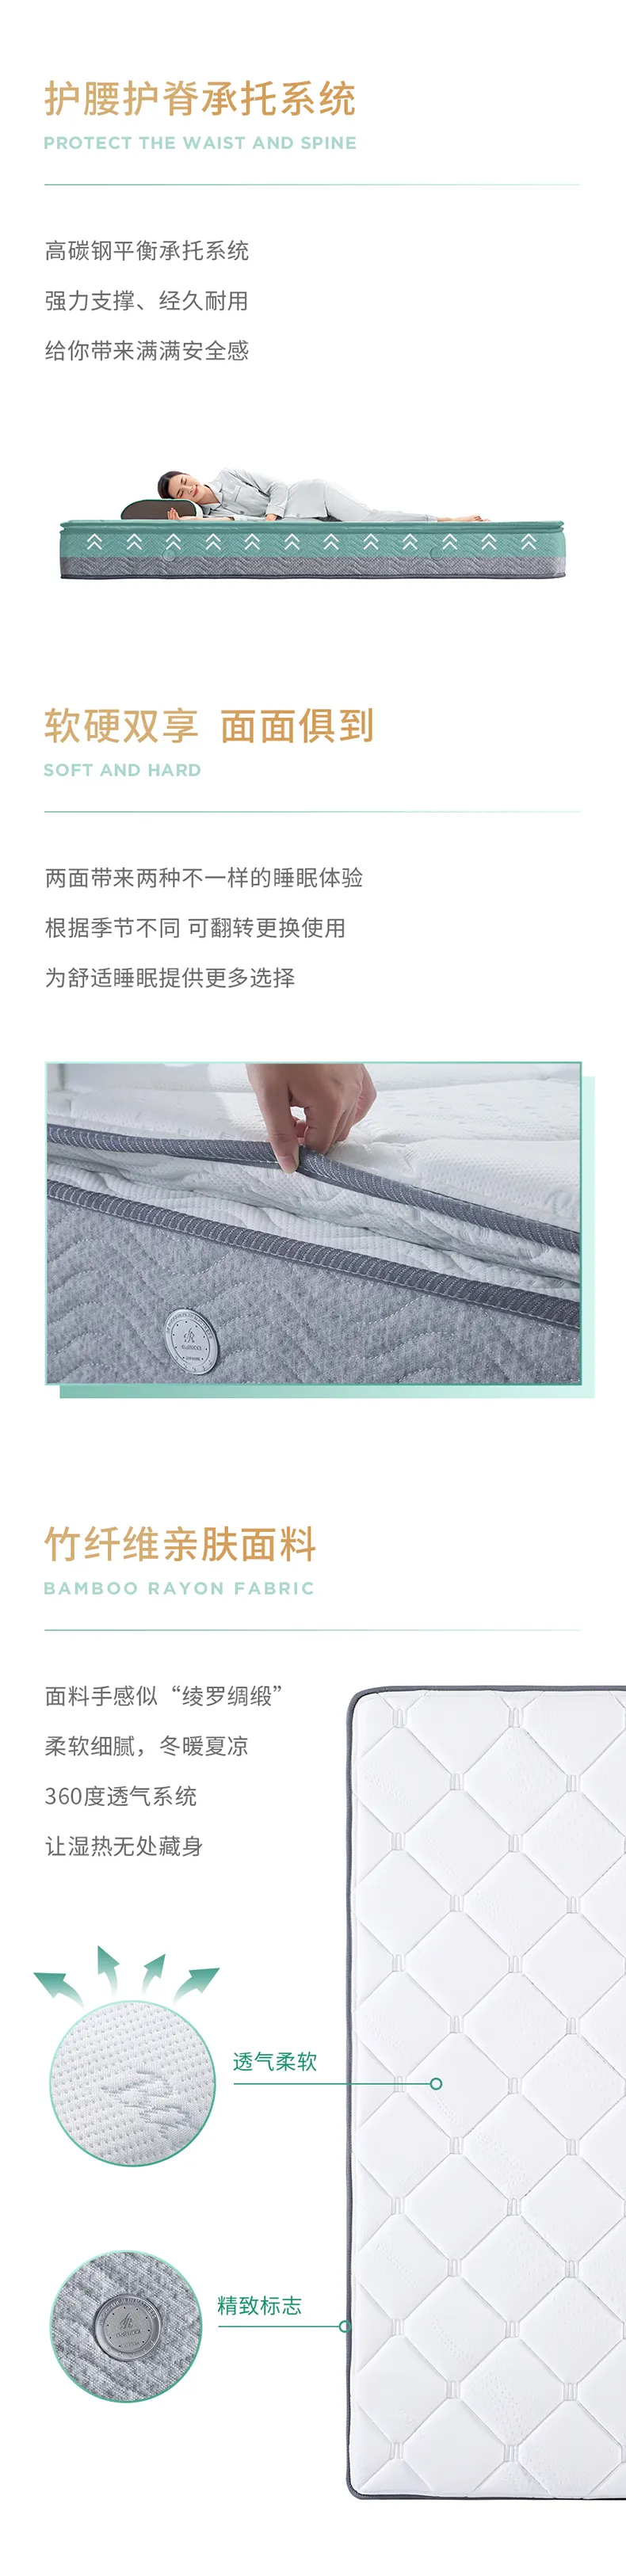 慕思集团 时尚品牌V6家居分区凝胶记忆棉舒适护脊床垫 MFF1-007(图2)